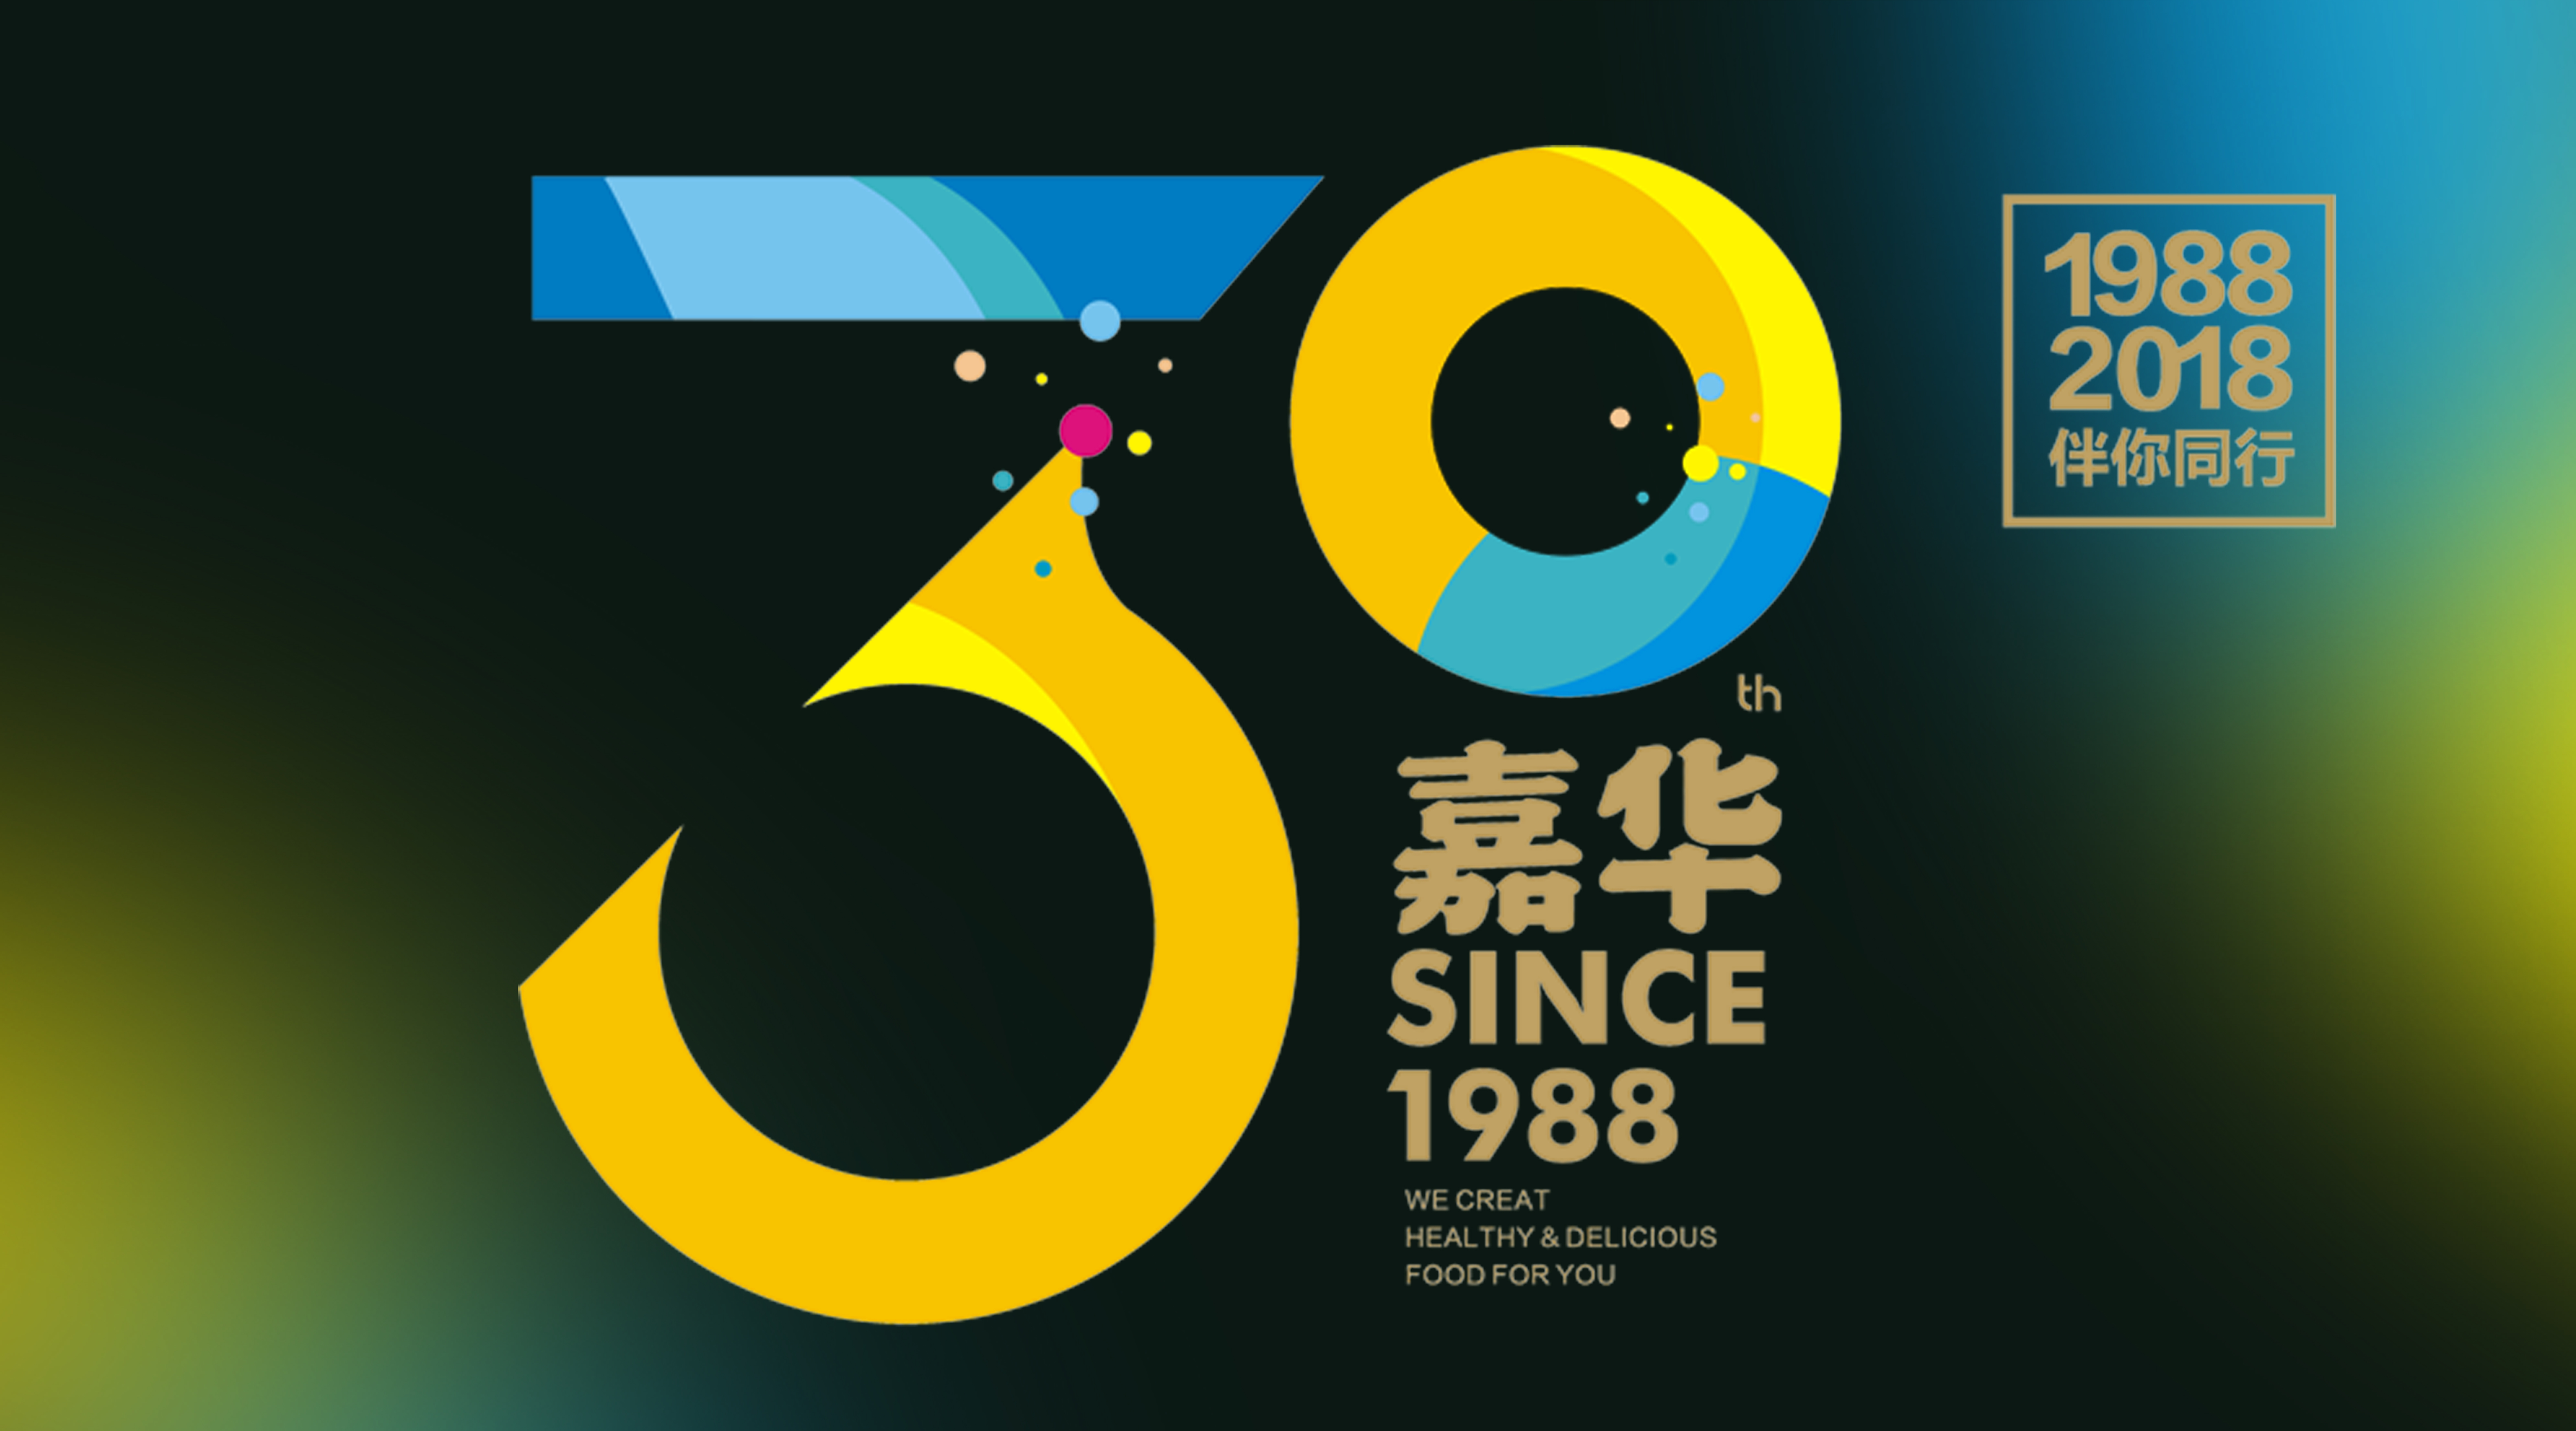 1988年,50岁的黄思烈先生在彩云之南创办了云南嘉华